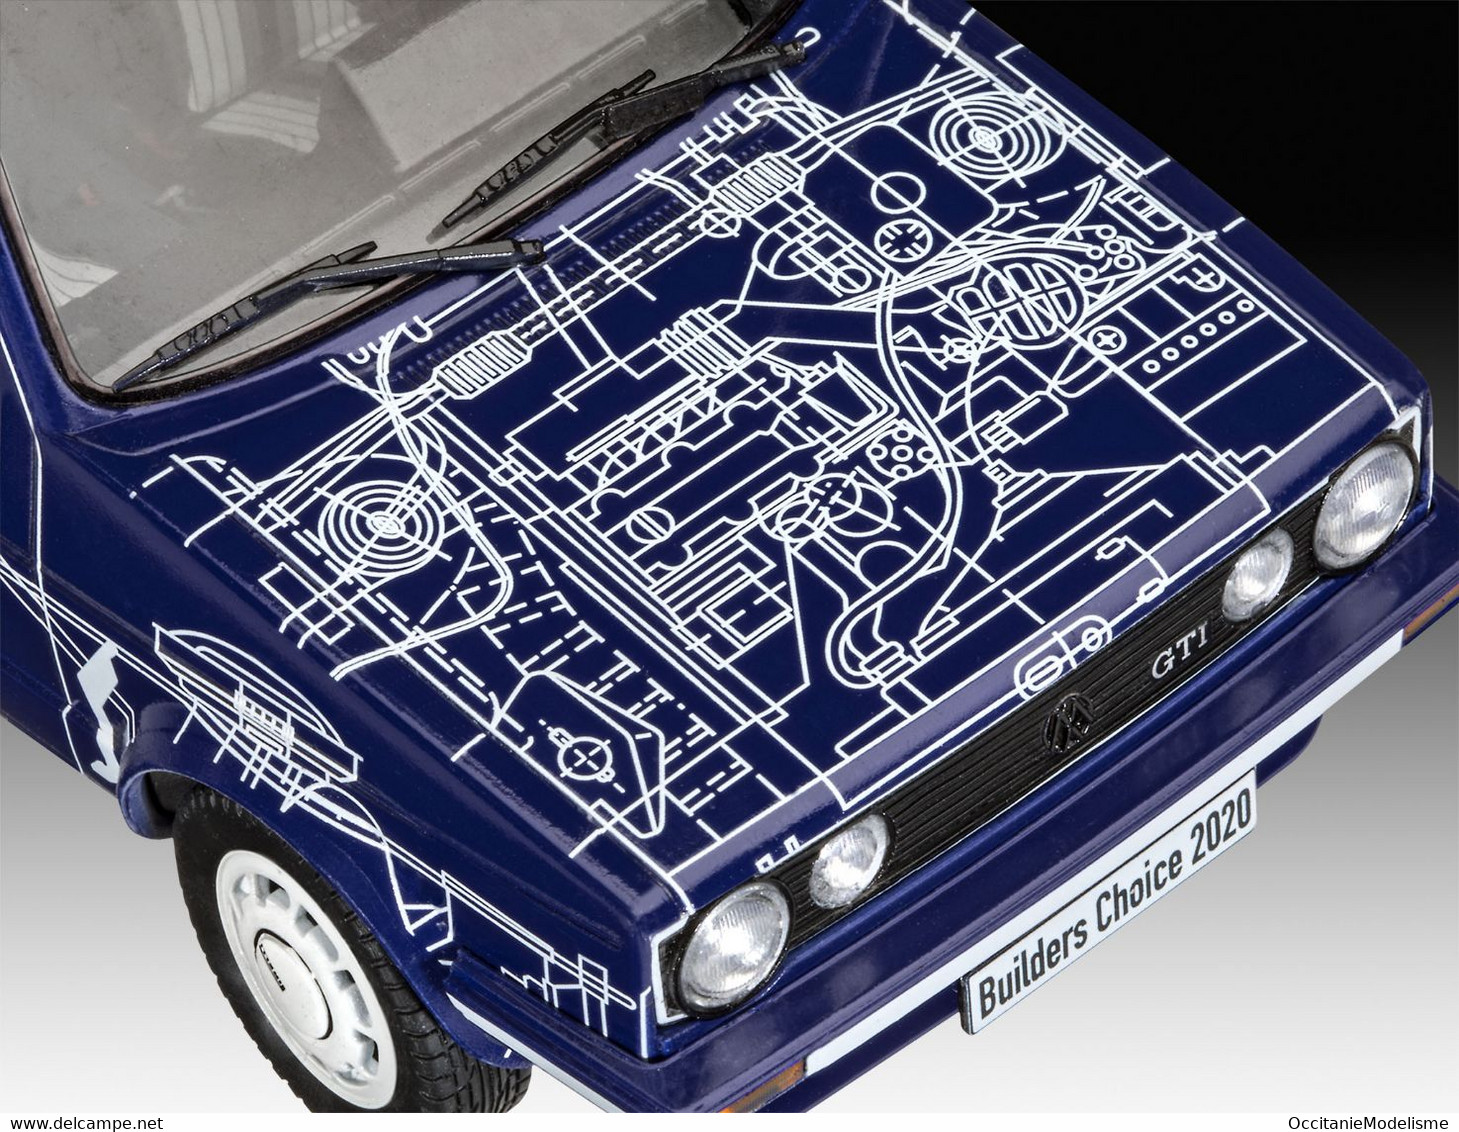 Revell - SET VW VOLKSWAGEN GOLF GTI + Peintures + Colle Maquette Kit Plastique Réf. 67673 Neuf 1/24 - Autos